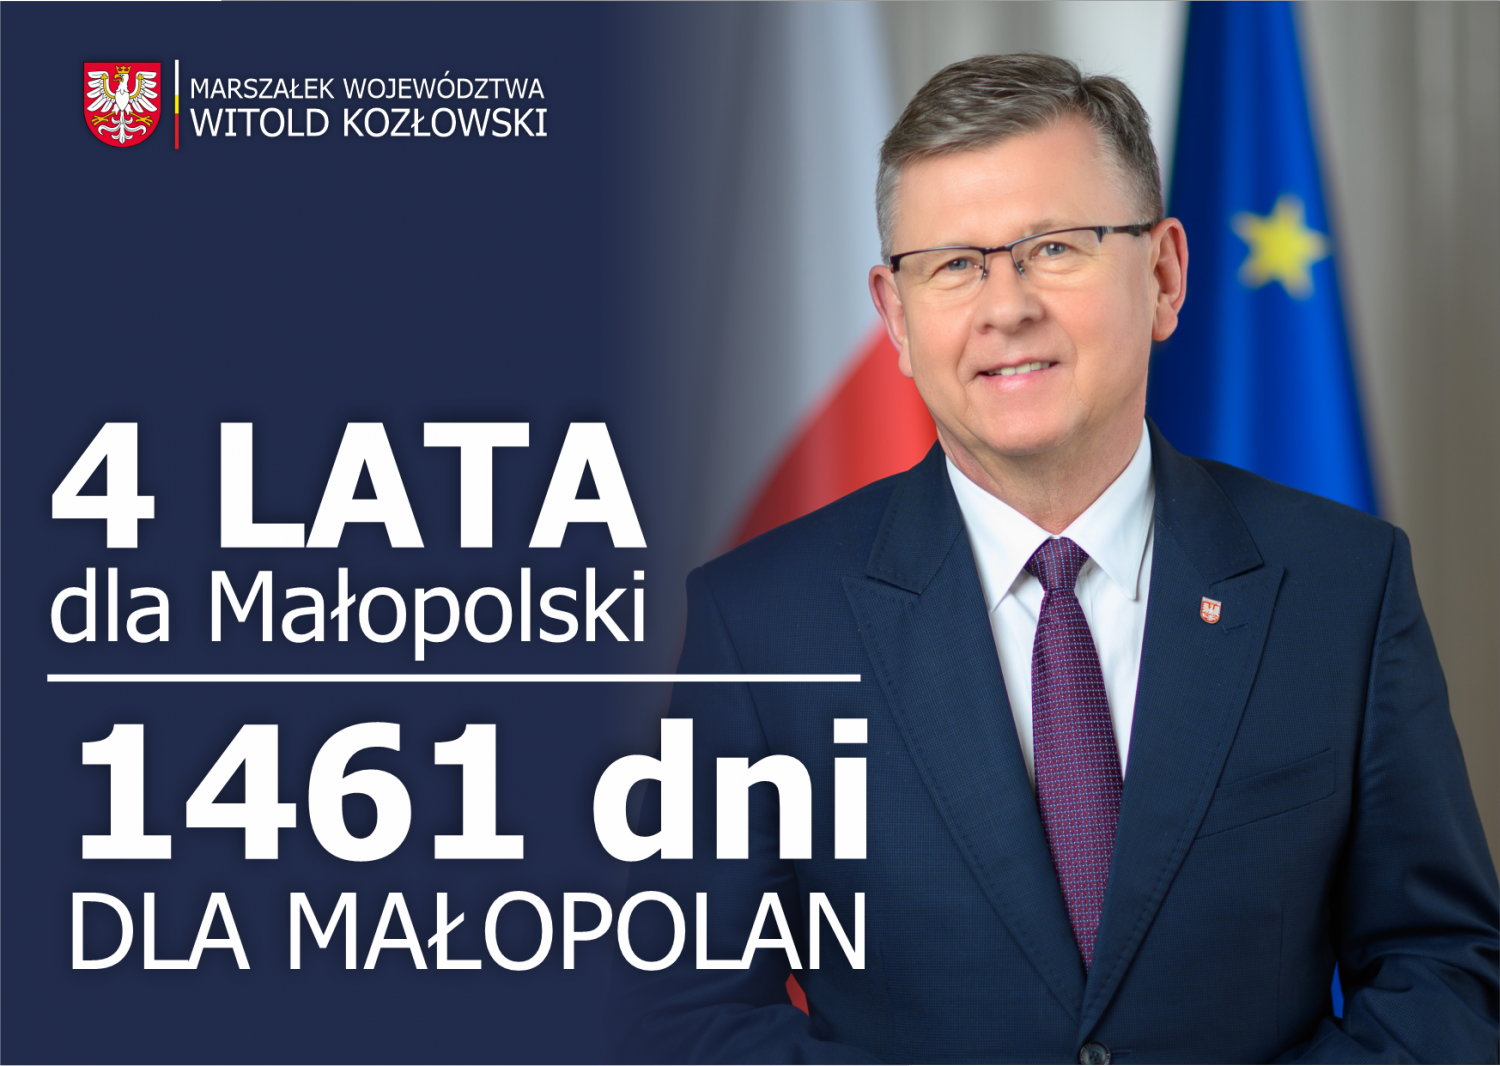 Grafika informacyjna: na niebieskim tle i ze zdjęciem marszałka Małopolski duży napis: 4 lata dla Małopolski, 1461 dni dla Małopolan.